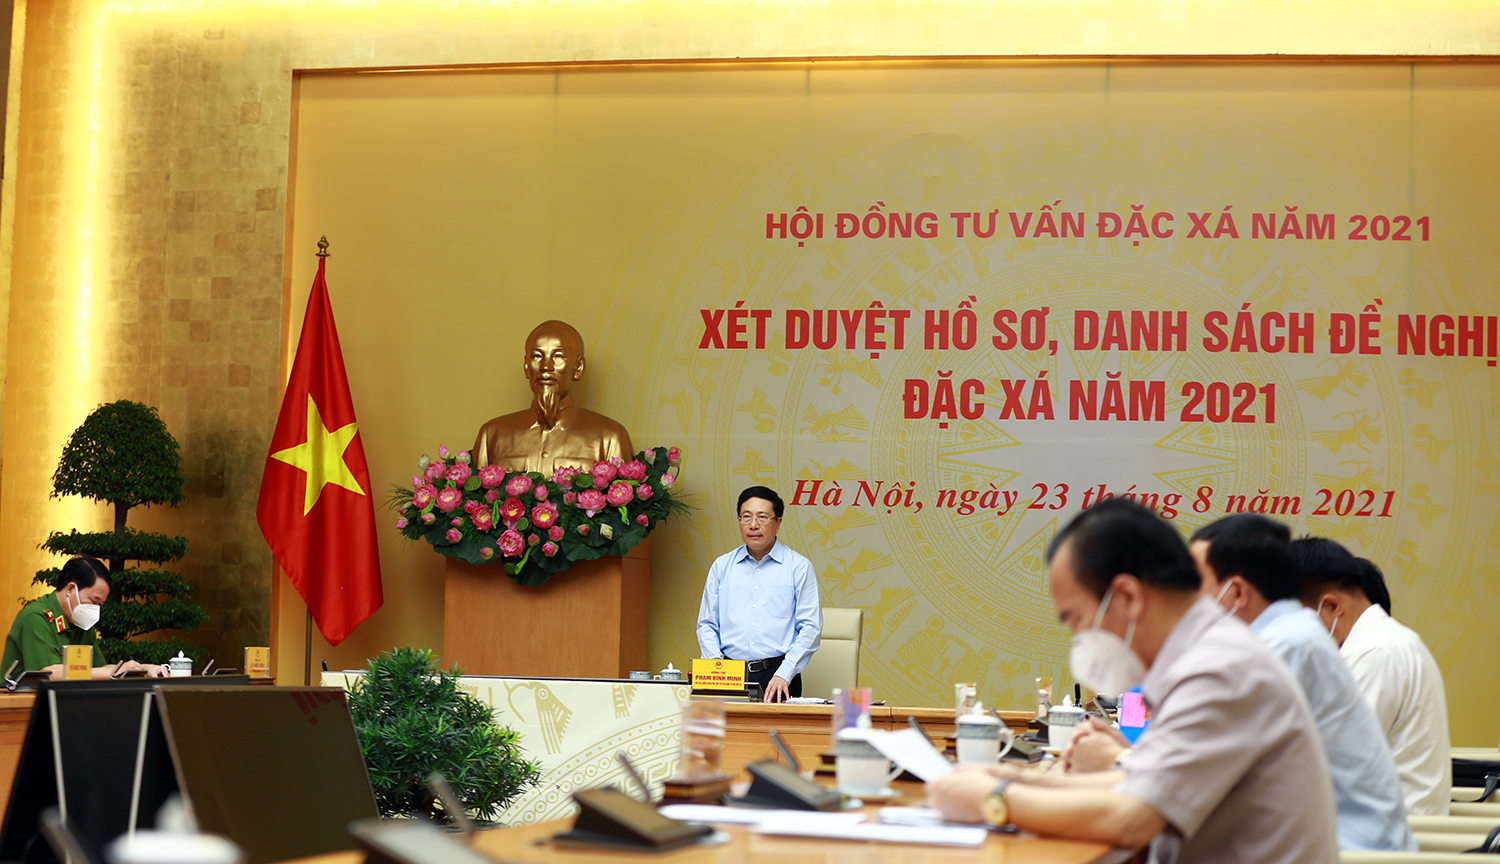 Phó Thủ tướng Phạm Bình Minh chủ trì cuộc họp xét duyệt hồ sơ đặc xá năm 2021 - Ảnh 1.